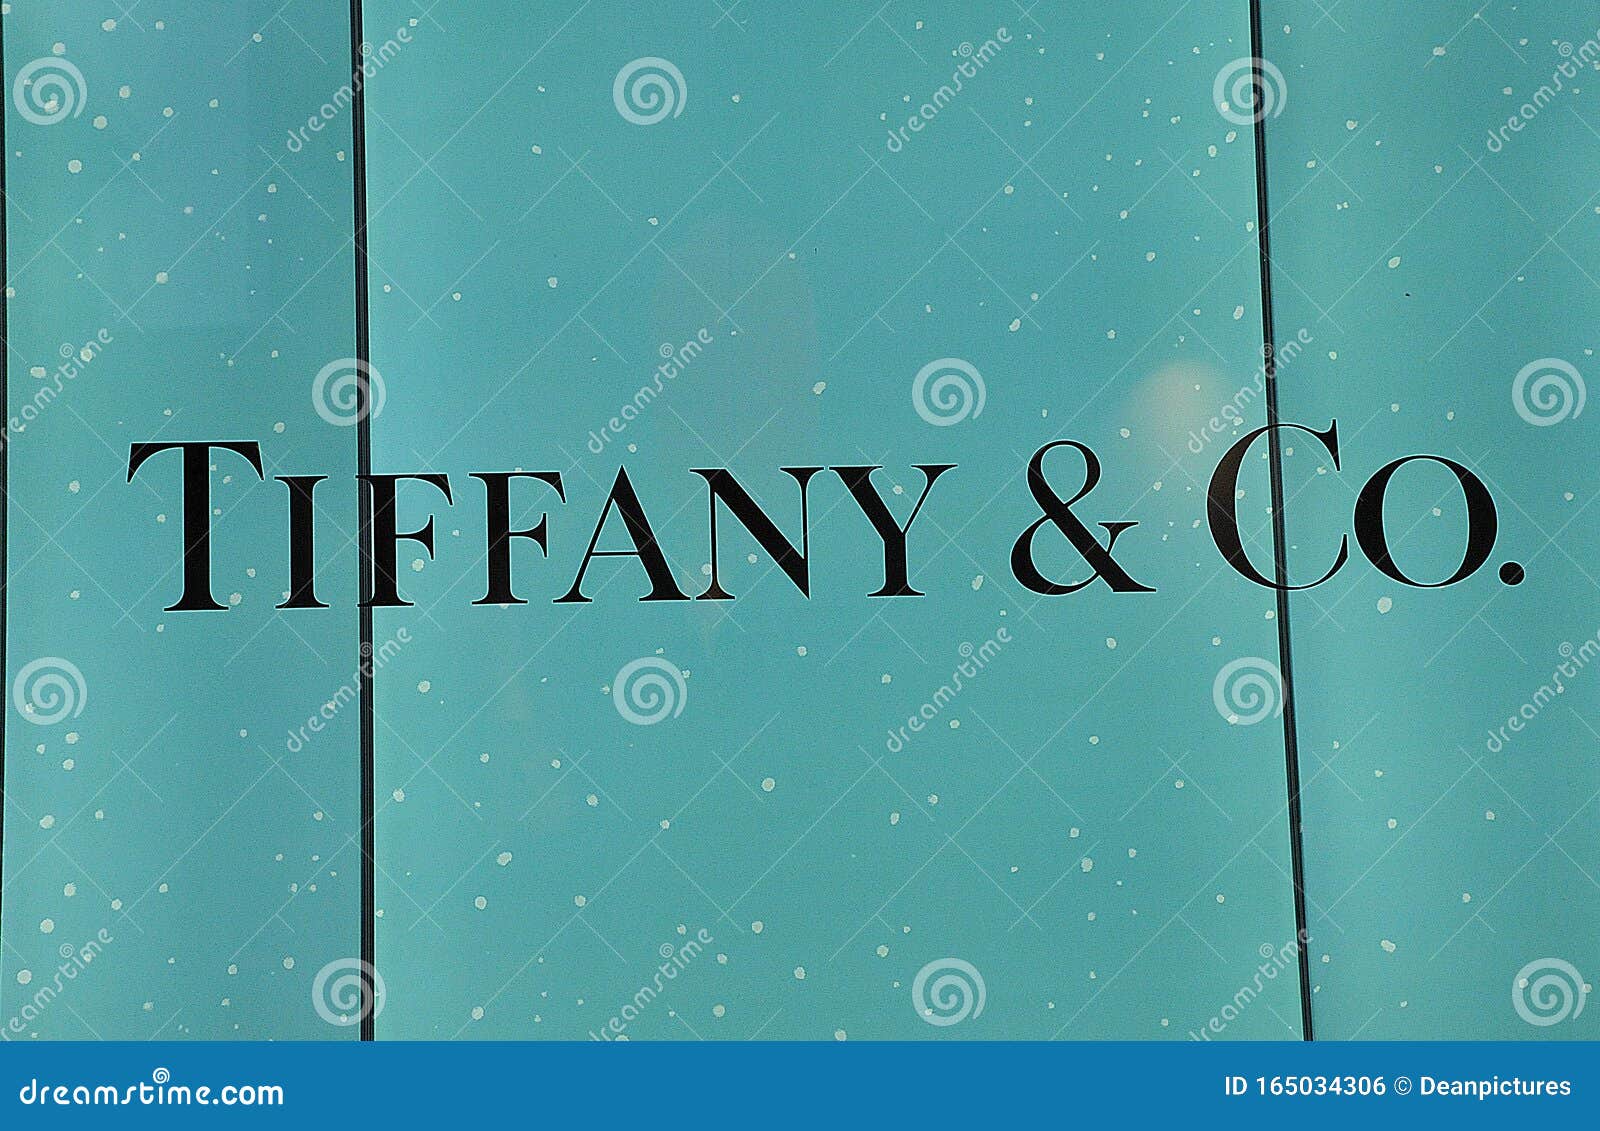 tiffany and co denmark